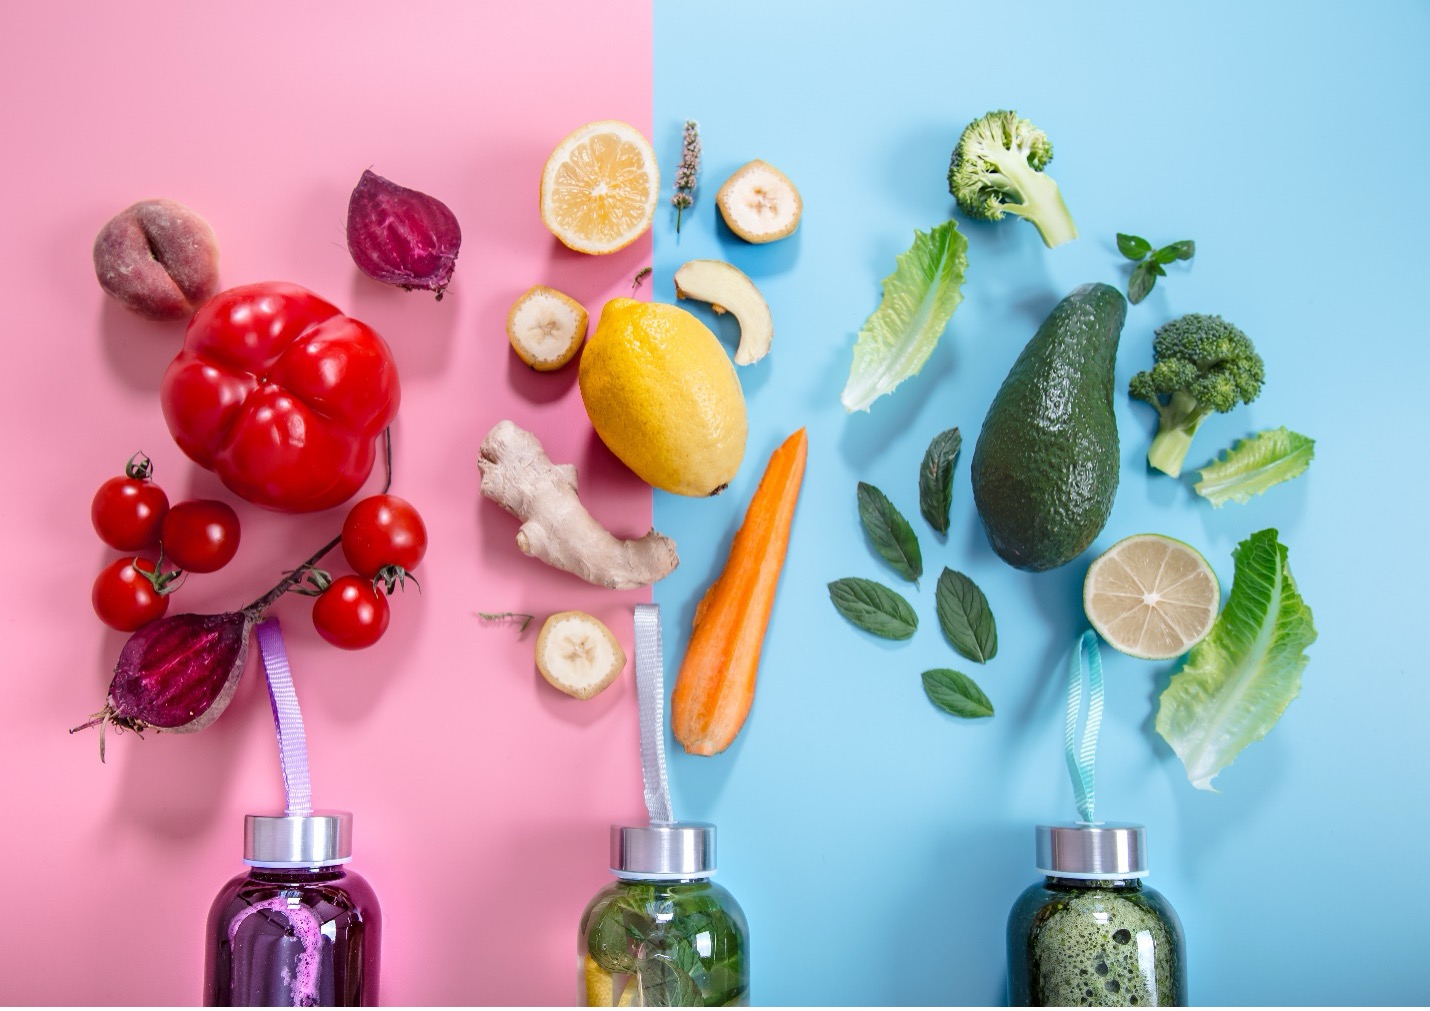 مصرف میوه ها و سبزیجات با رنگدانه های مختلف خاصیت ضدسرطانی دارد